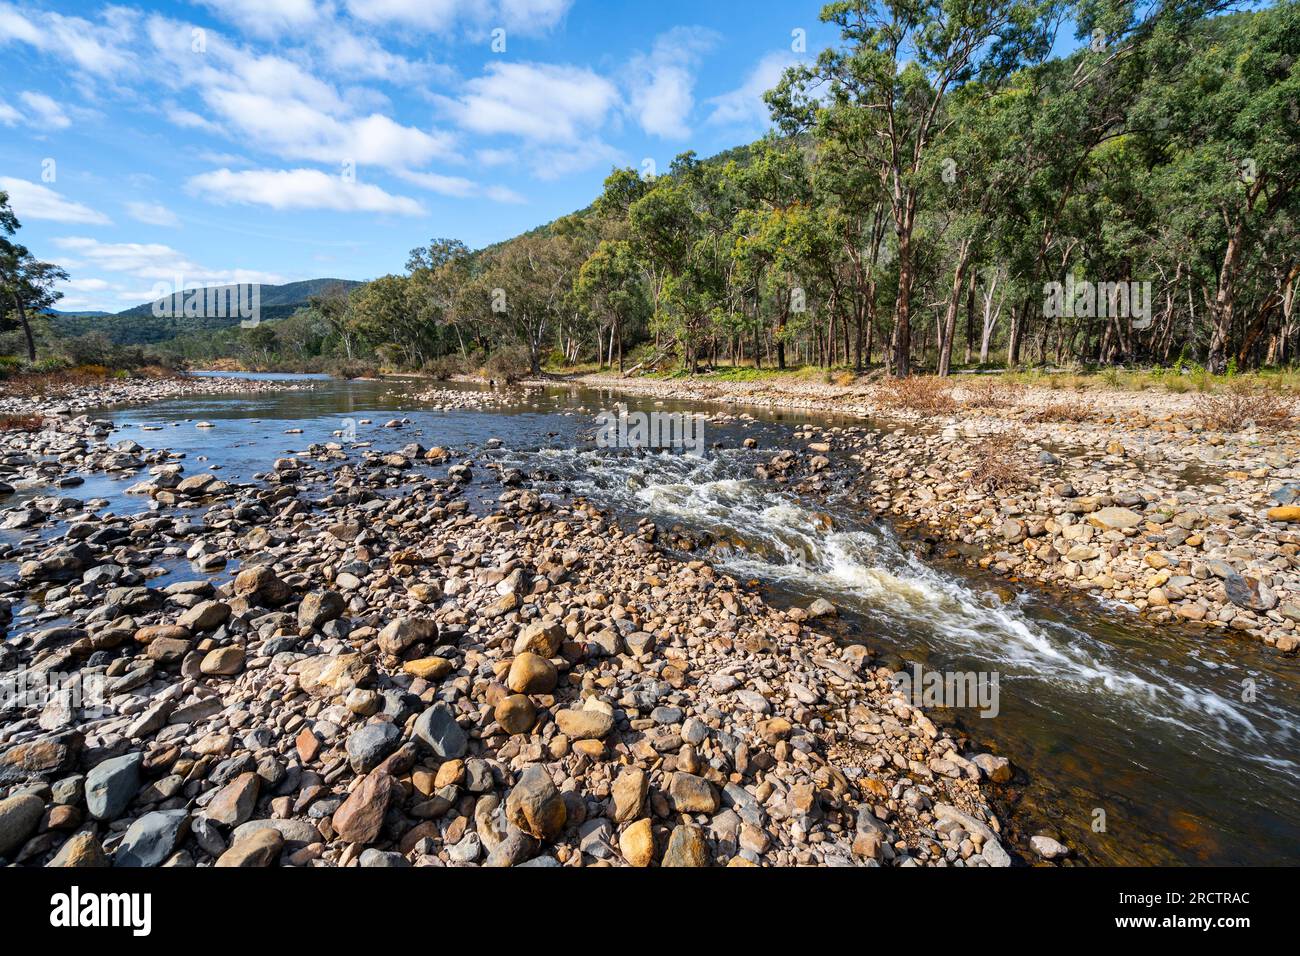 Rivière Severn en cascade sur le lit rocheux de la rivière, terrain de camping Broadwater, parc national Sundown, Queensland Australie Banque D'Images